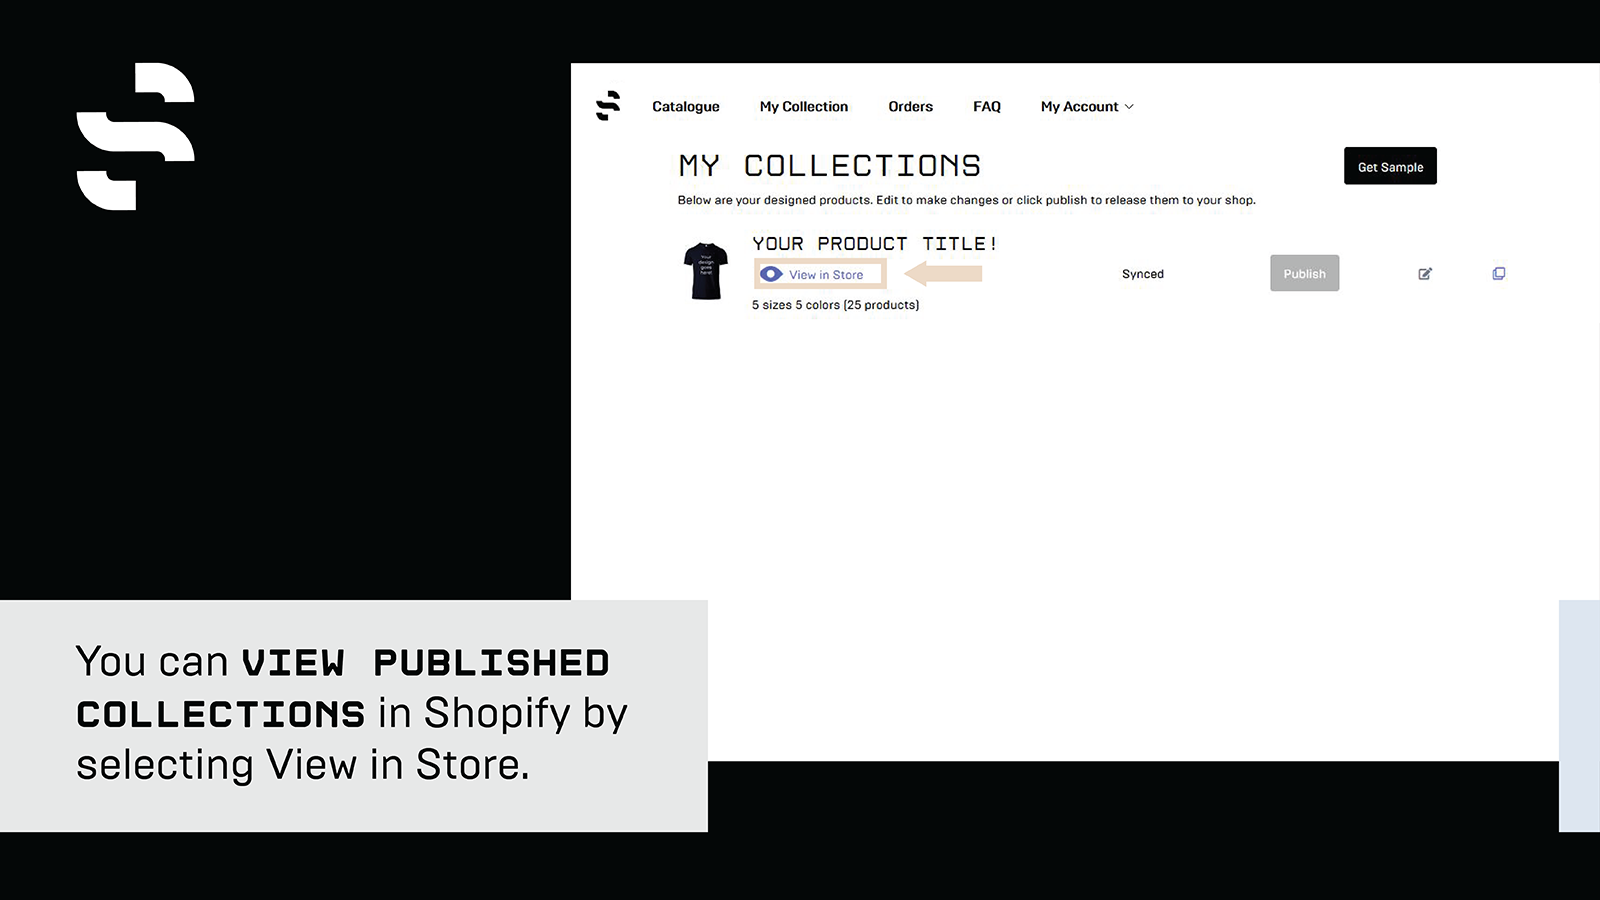 Ver colecciones publicadas en Shopify